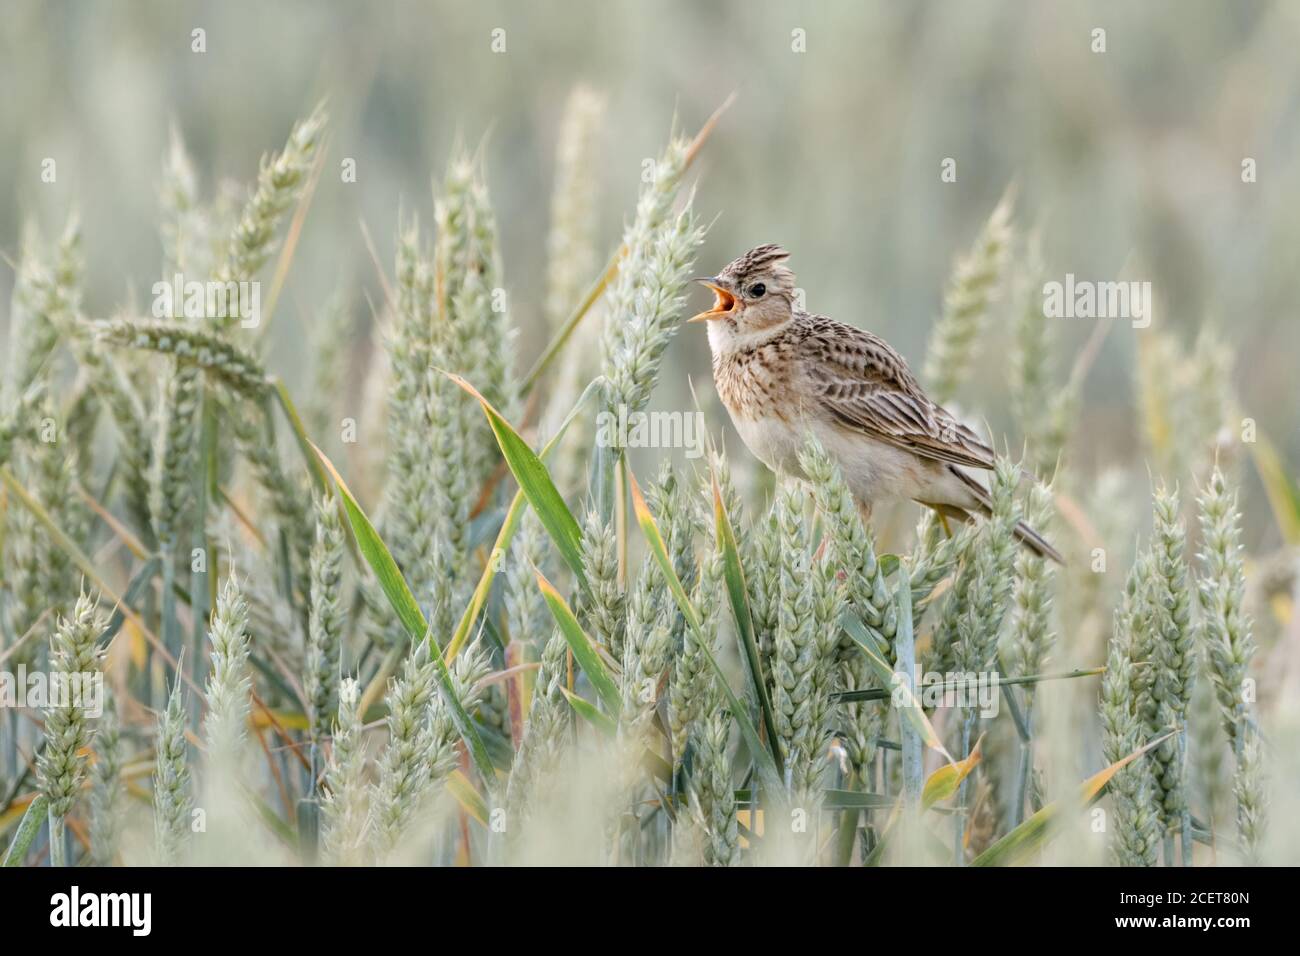 Skylark eurasien ( Alauda arvensis ) perchée dans un champ de blé, chantant sur les cultures de blé, crête élevée, oiseau de terres agricoles ouvertes, faune, Europe. Banque D'Images